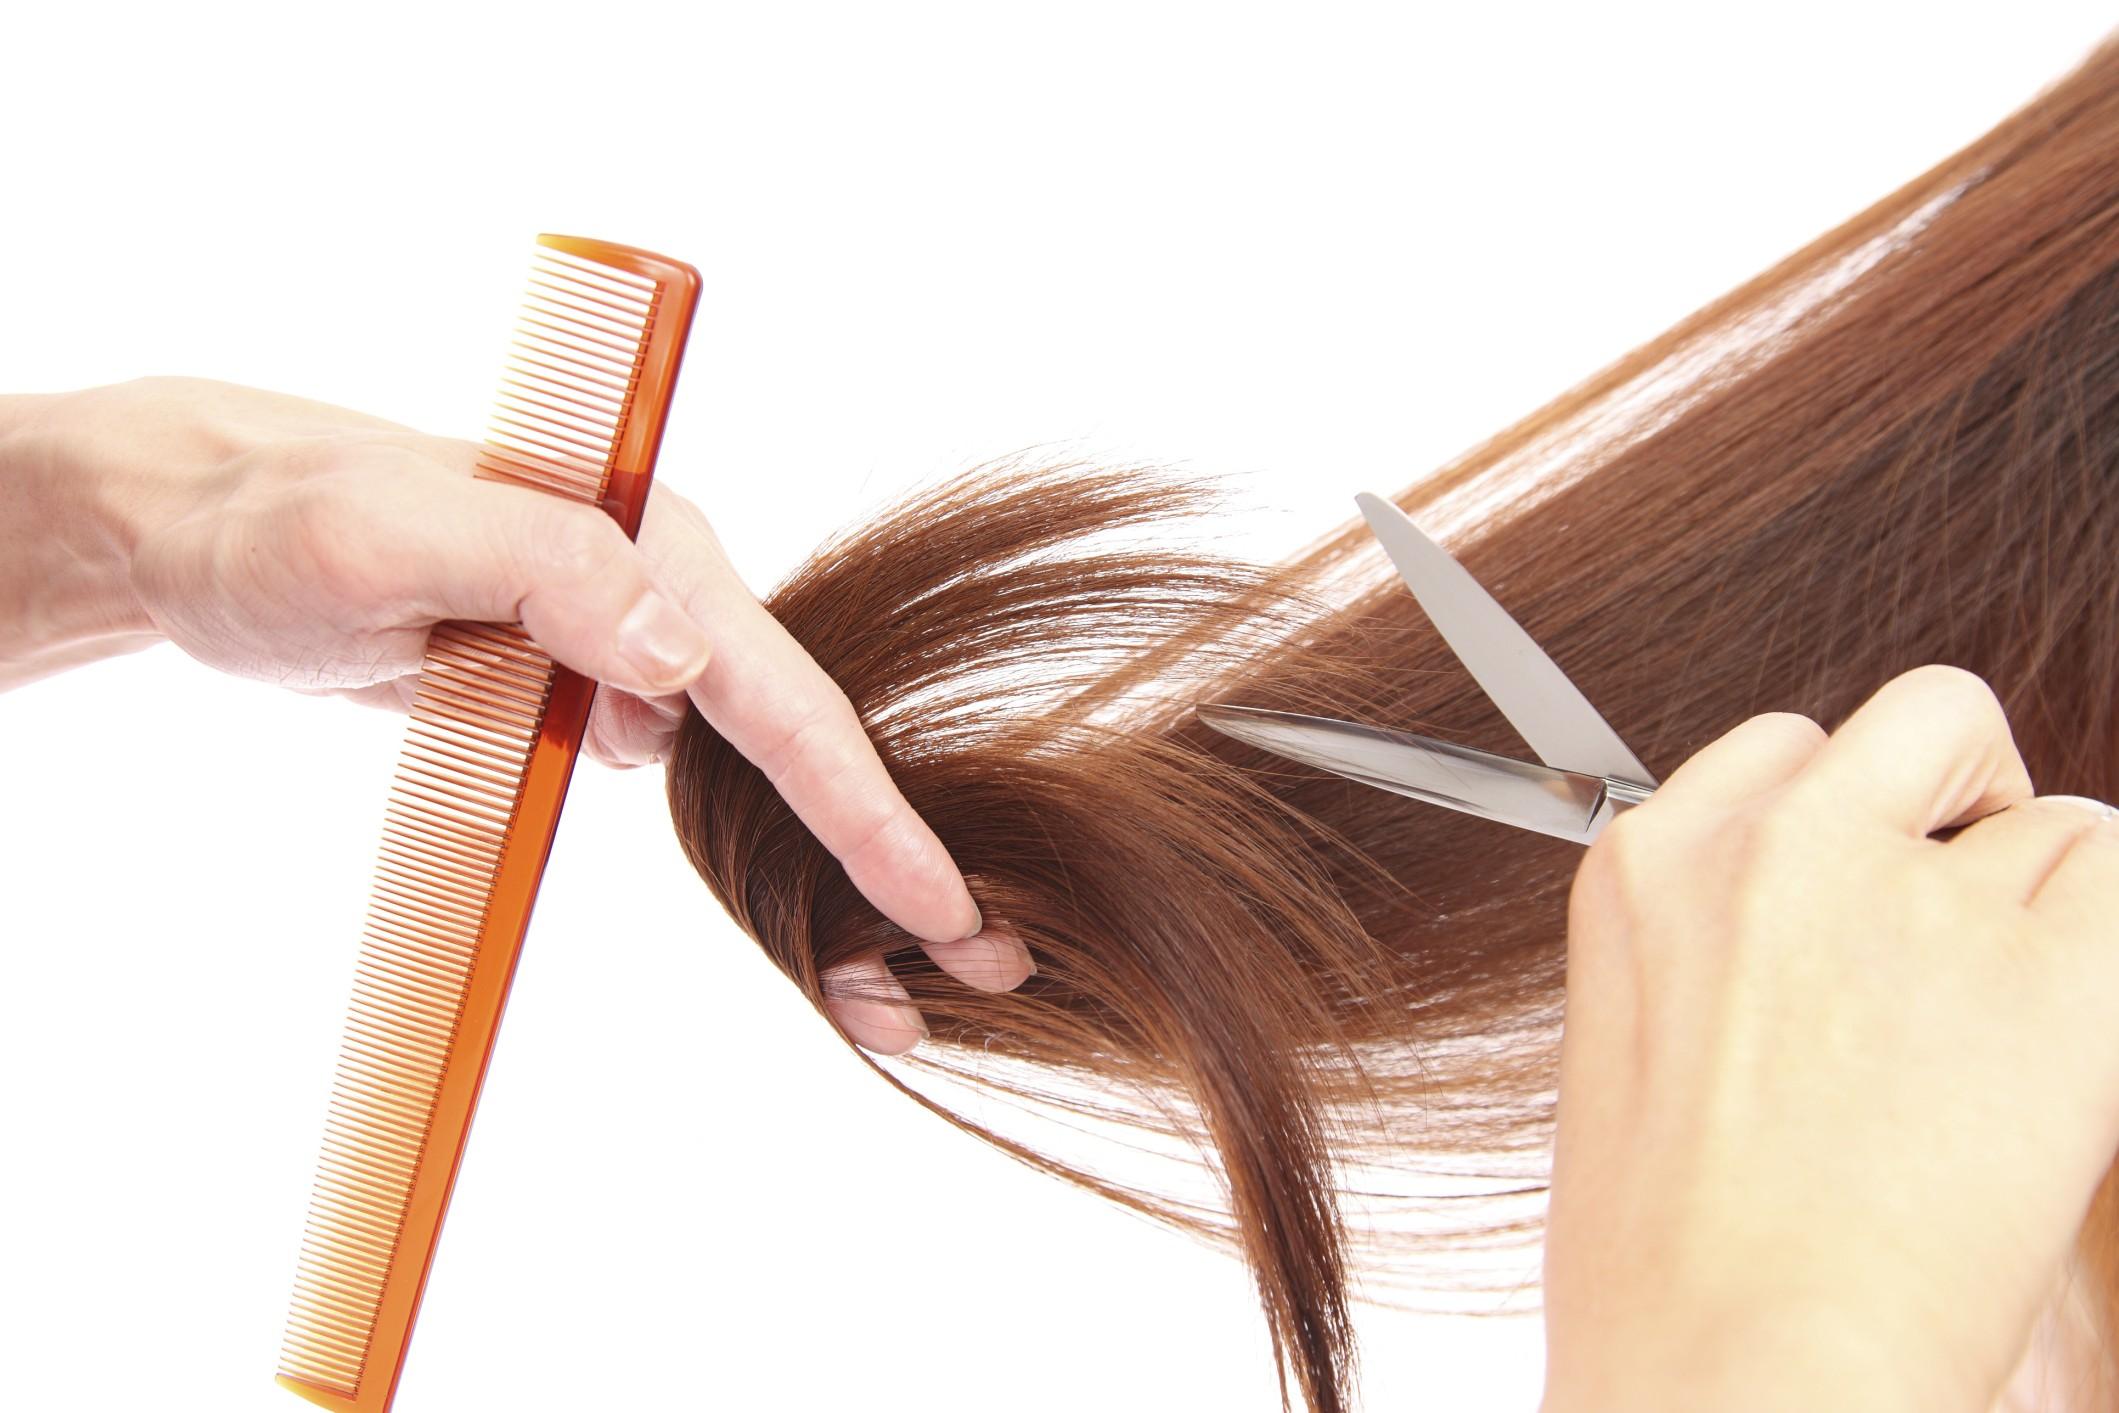 Стрижка волос как влияет на здоровье волос